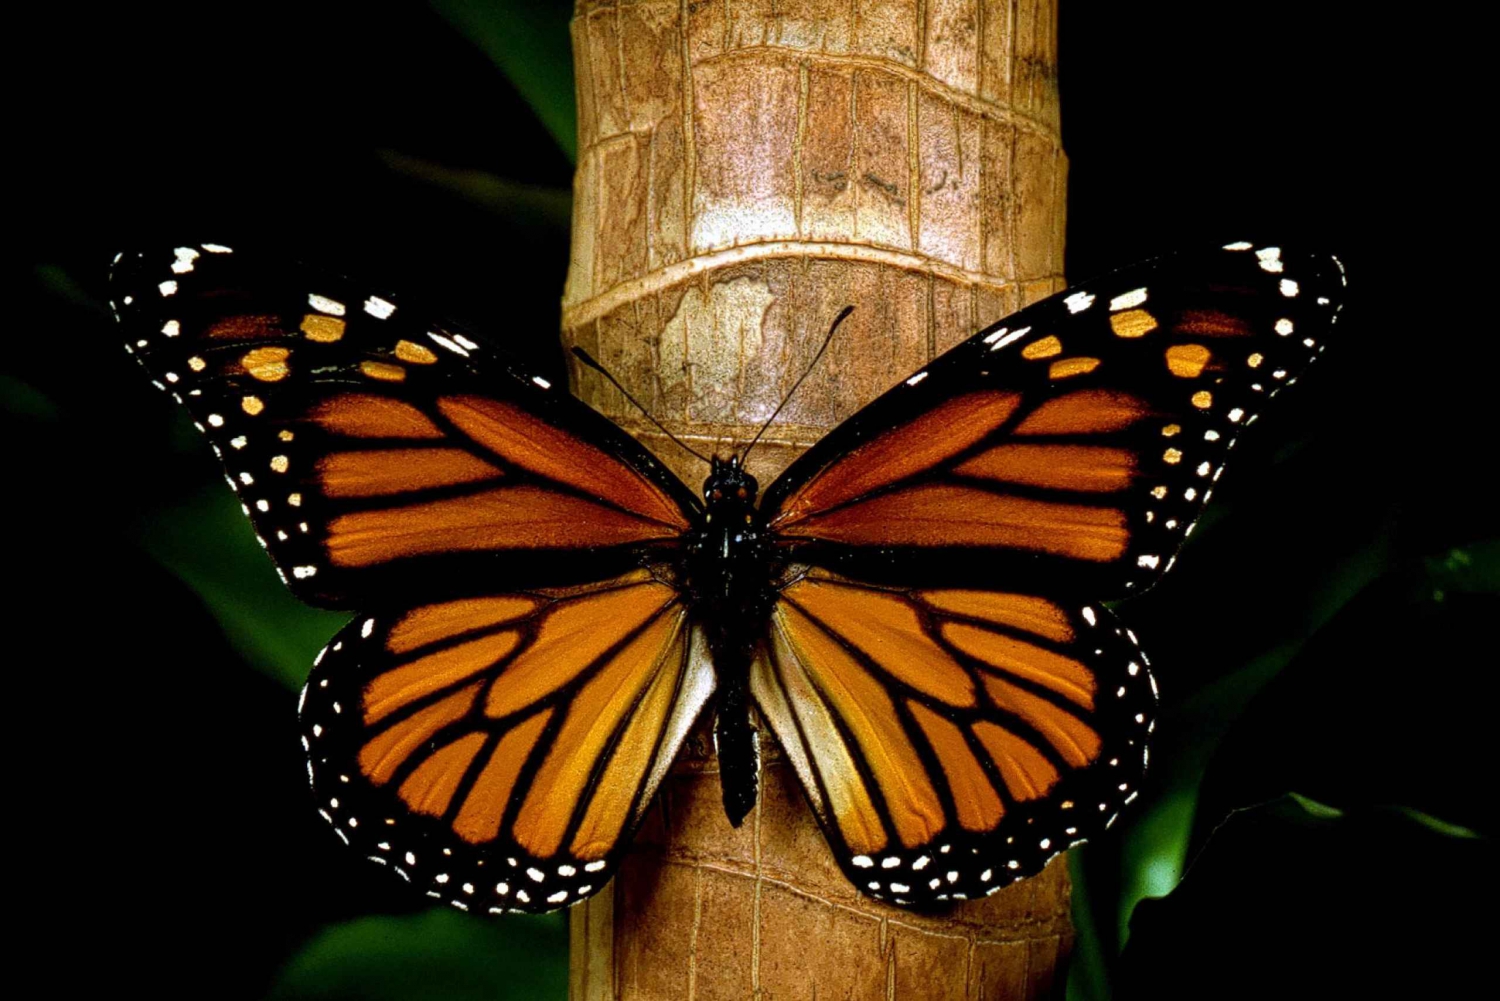 Monarch Butterfly Sanctuary Tour